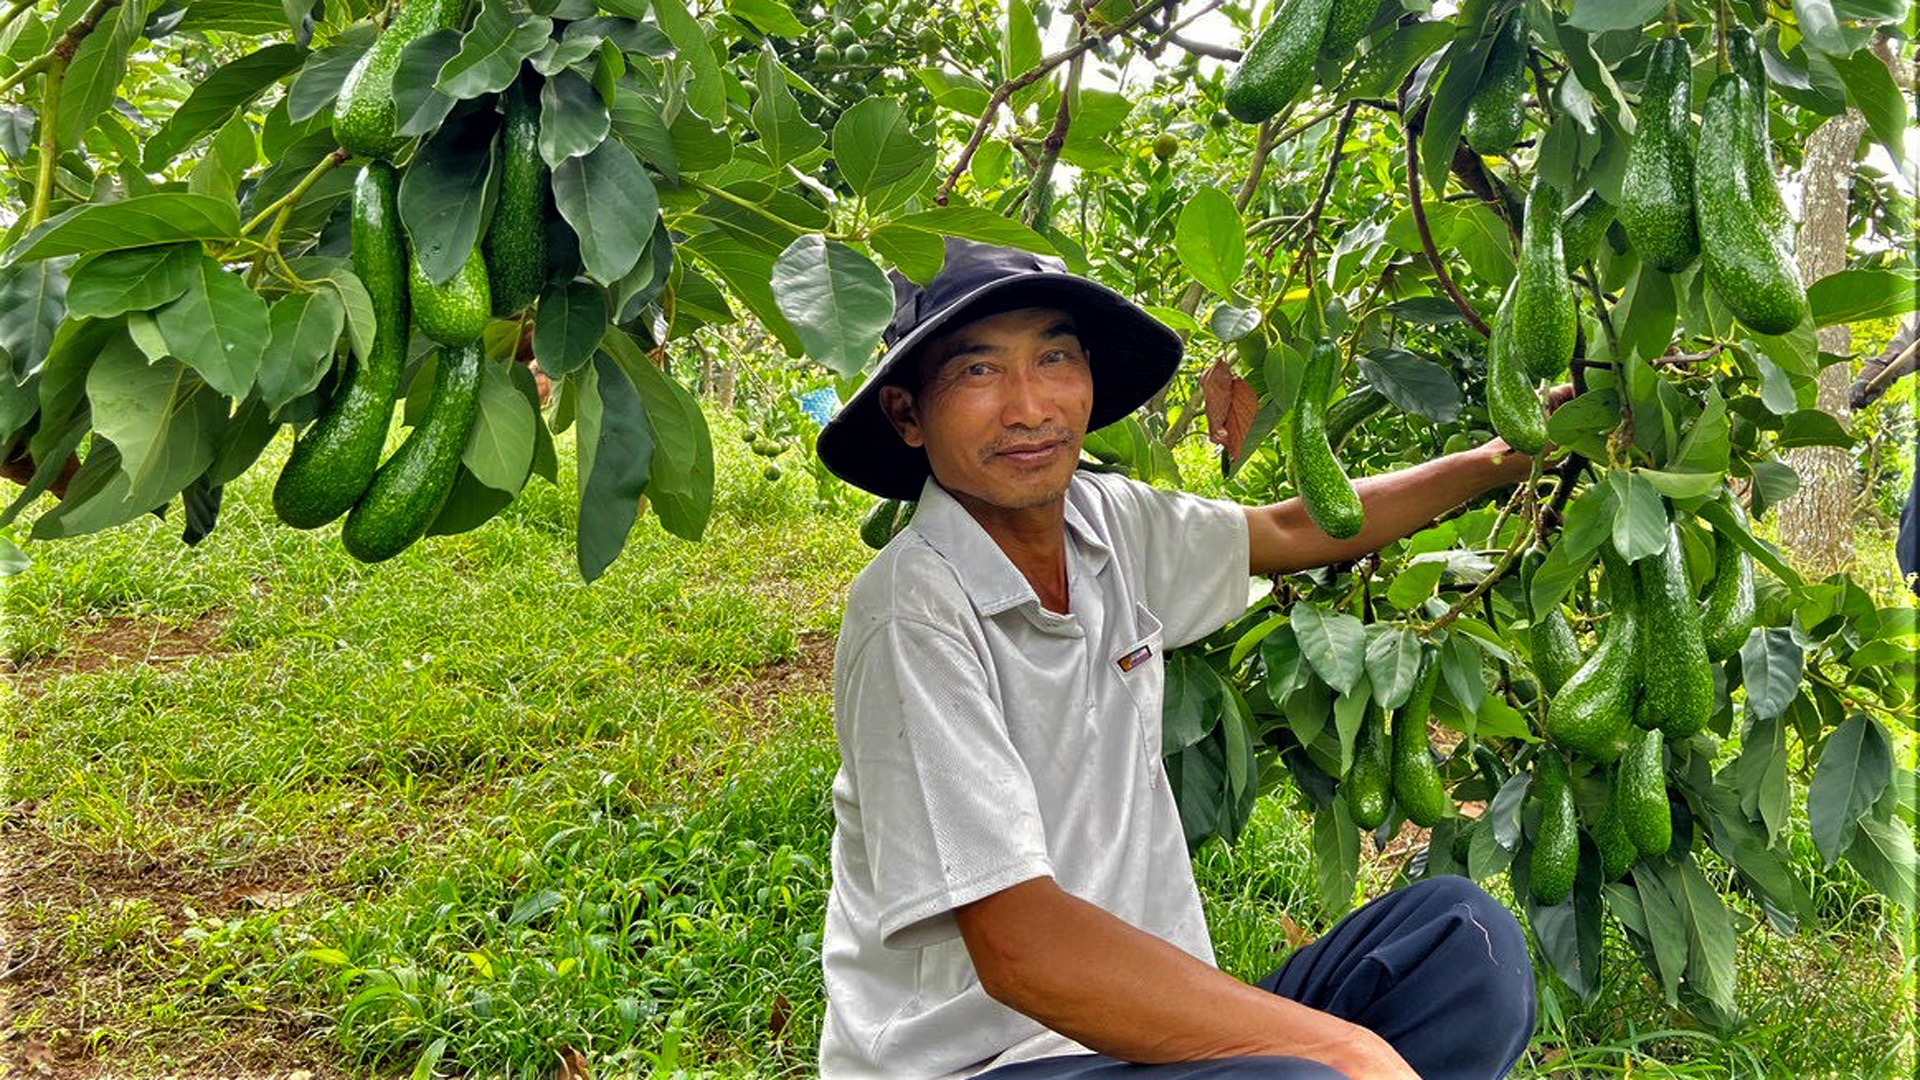 Nhiều nông hộ ở Lâm Đồng đã nghiên cứu, tác động 
các giải pháp kỹ thuật chuyển đổi thời gian thu hoạch sản phẩm bơ từ chính vụ sang trái vụ, đạt giá trị kinh tế cao hơn